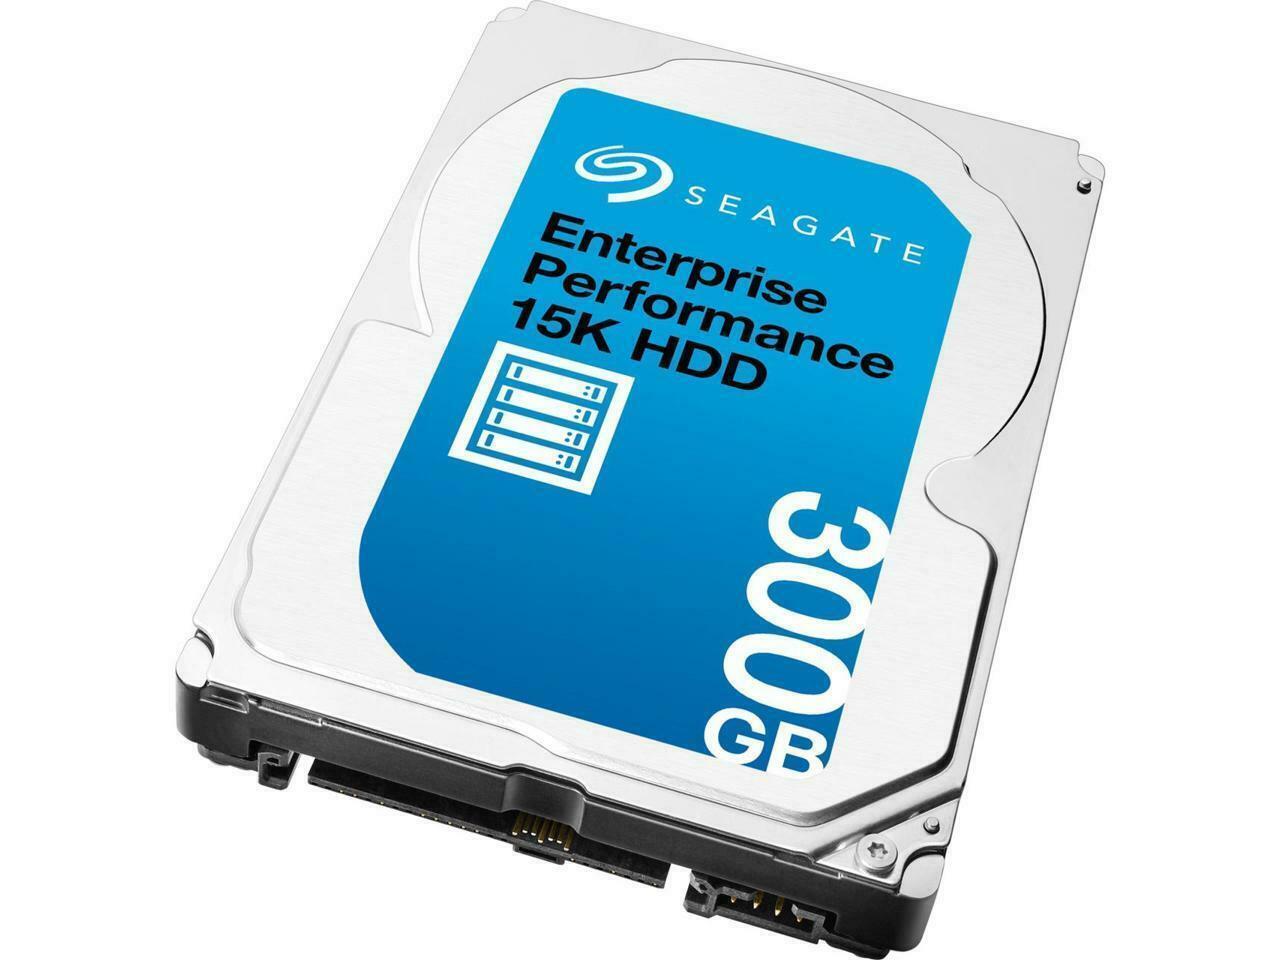 Seagate ST300MP0106 Enterprise 300GB SAS 2.5" Internal Hard Drive